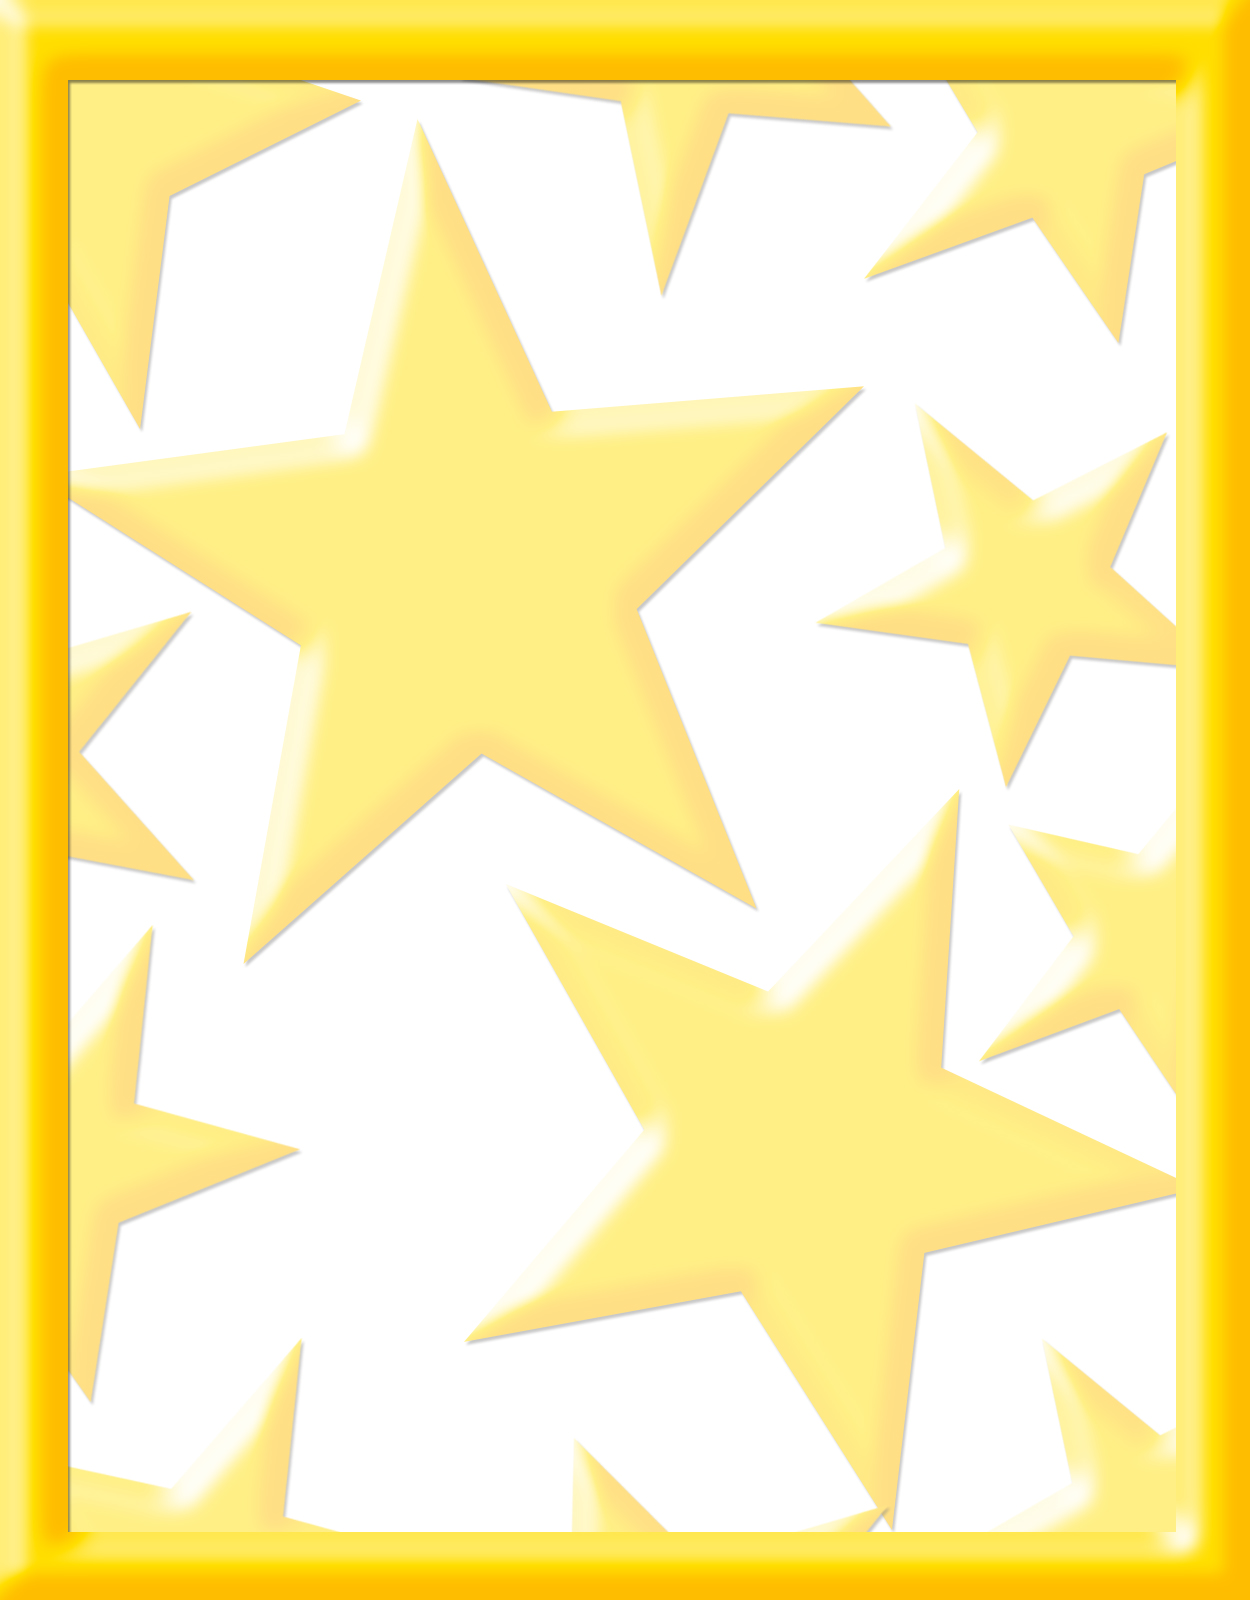 Excelente modelo de caratulas con diseño de ⭐ estrellas